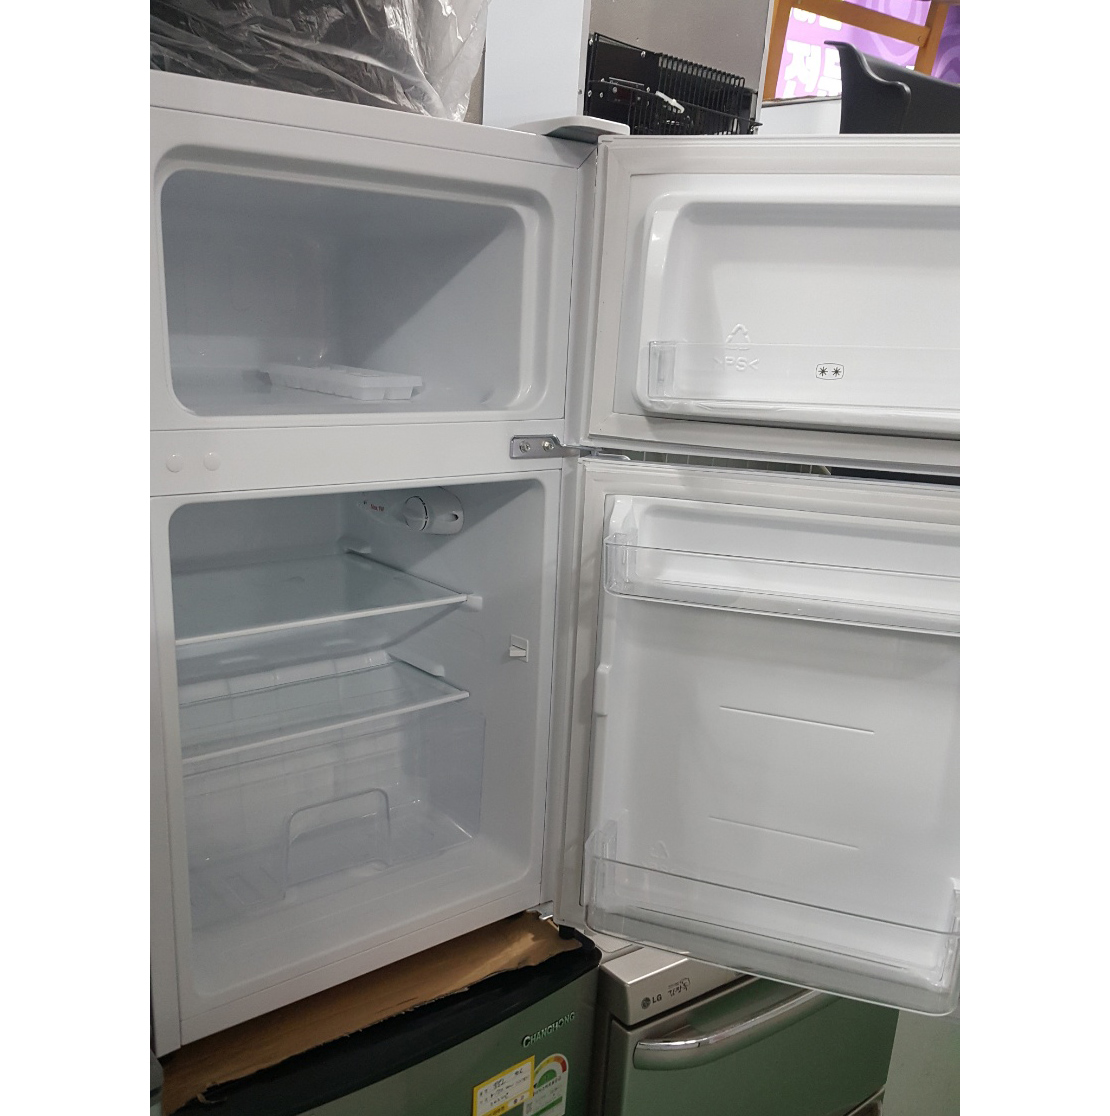 냉장고 90L